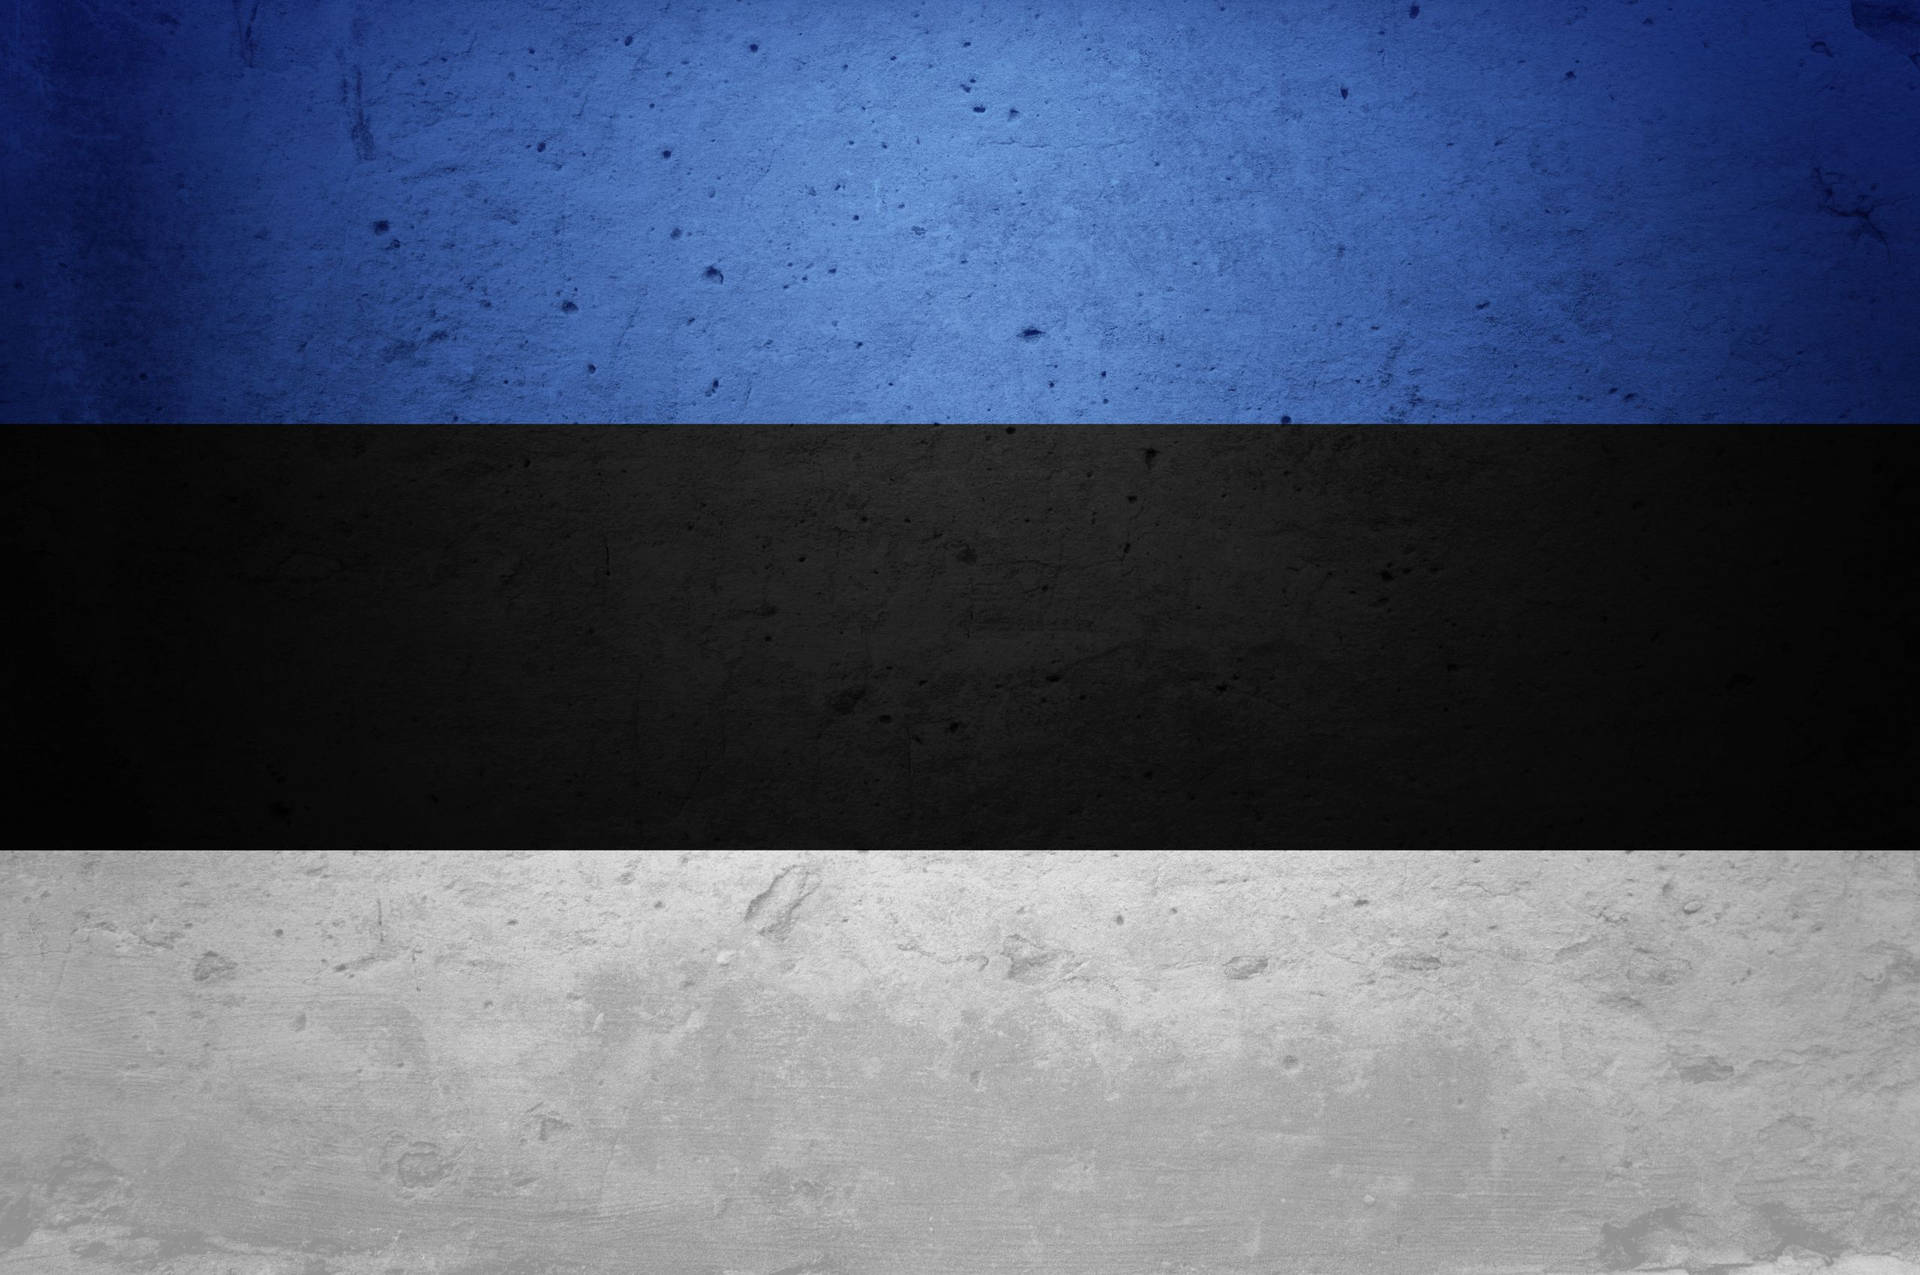 Estlandflagge Mit Betonstruktur Wallpaper